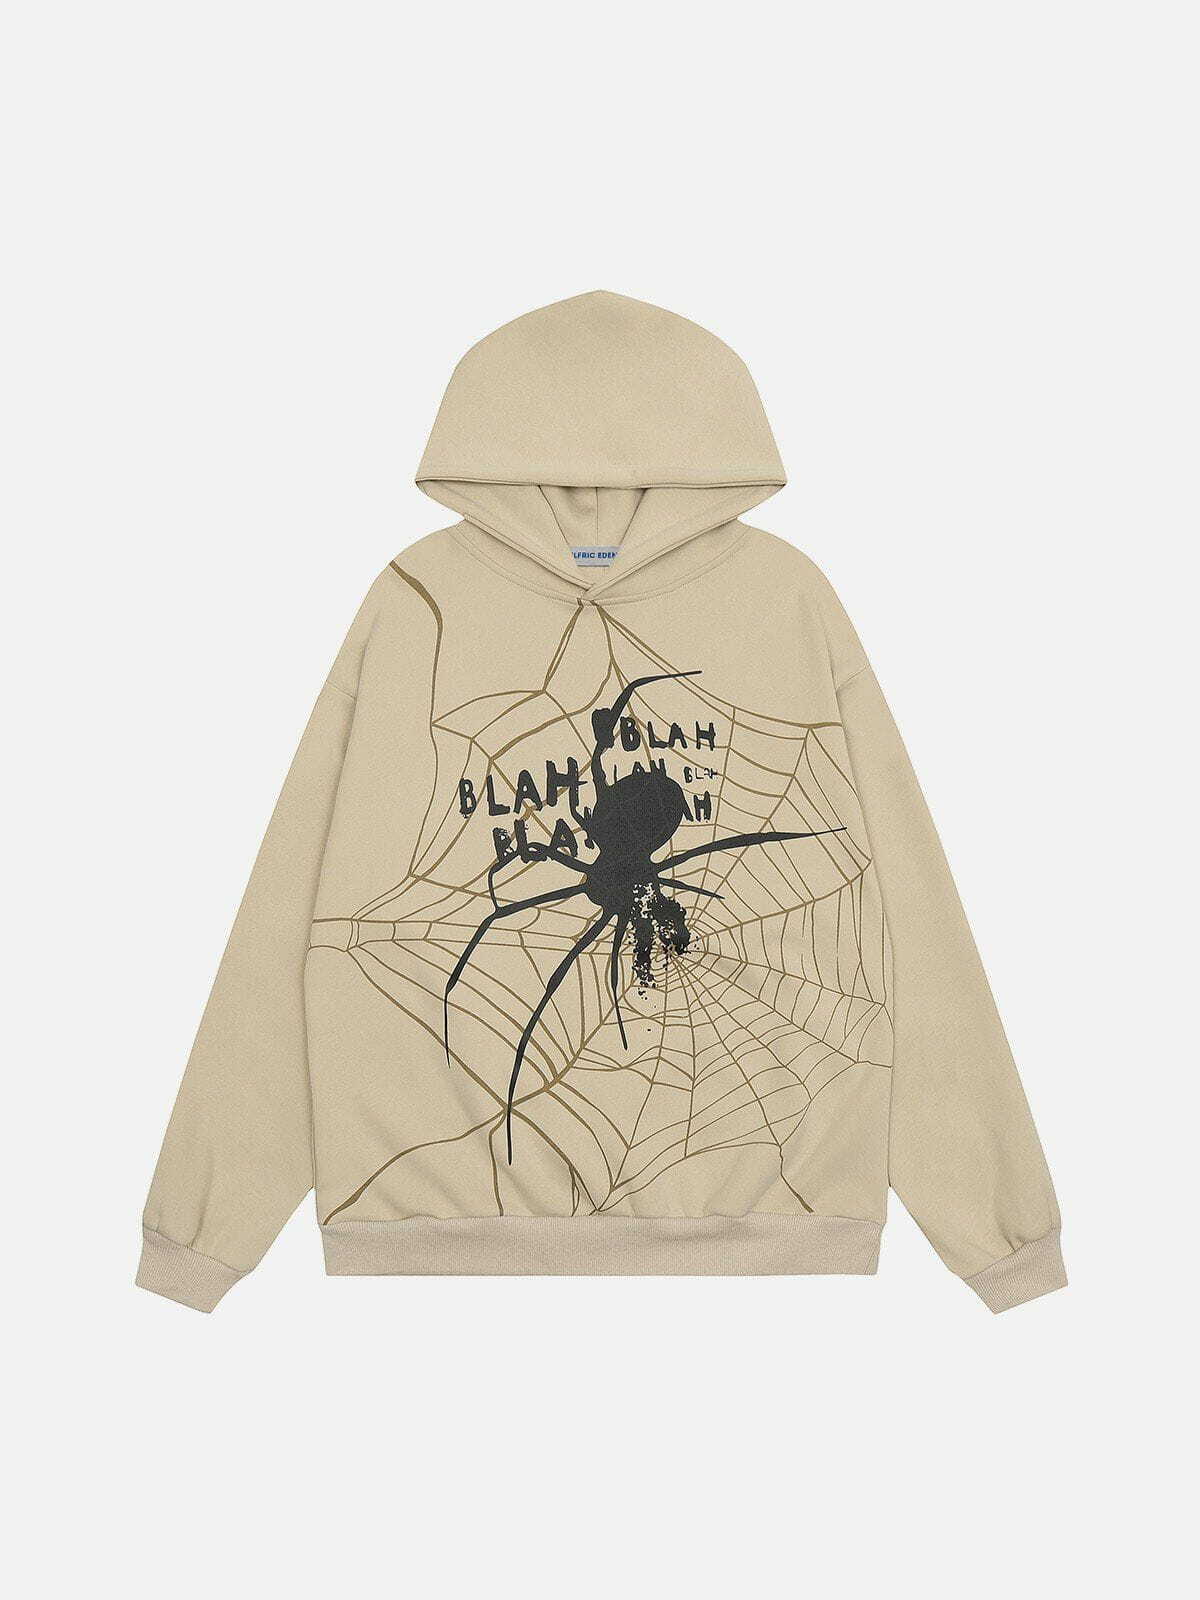 spider shadow hoodie edgy & urban streetwear 2448